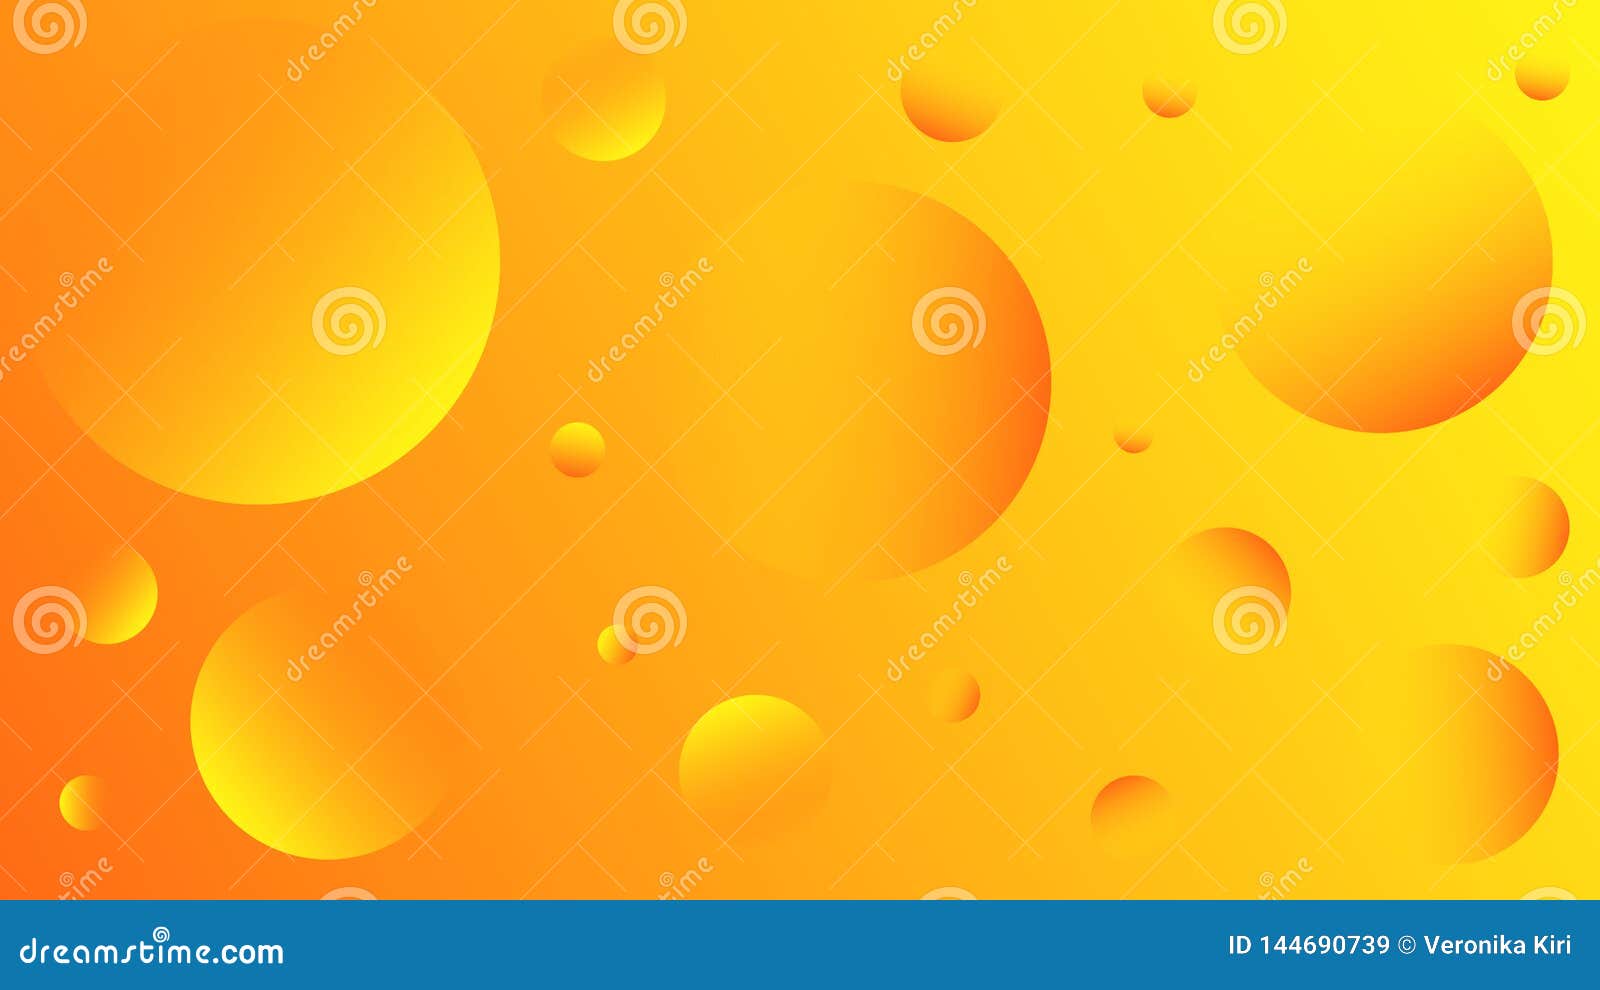 Khám phá nền nghệ thuật trừu tượng sáng lung linh với bong bóng vàng và cam! Ảnh sẽ đưa bạn vào một thế giới đầy màu sắc, từ những viên bong bóng cam đến những đường cong trừu tượng đầy tác phẩm nghệ thuật độc đáo.